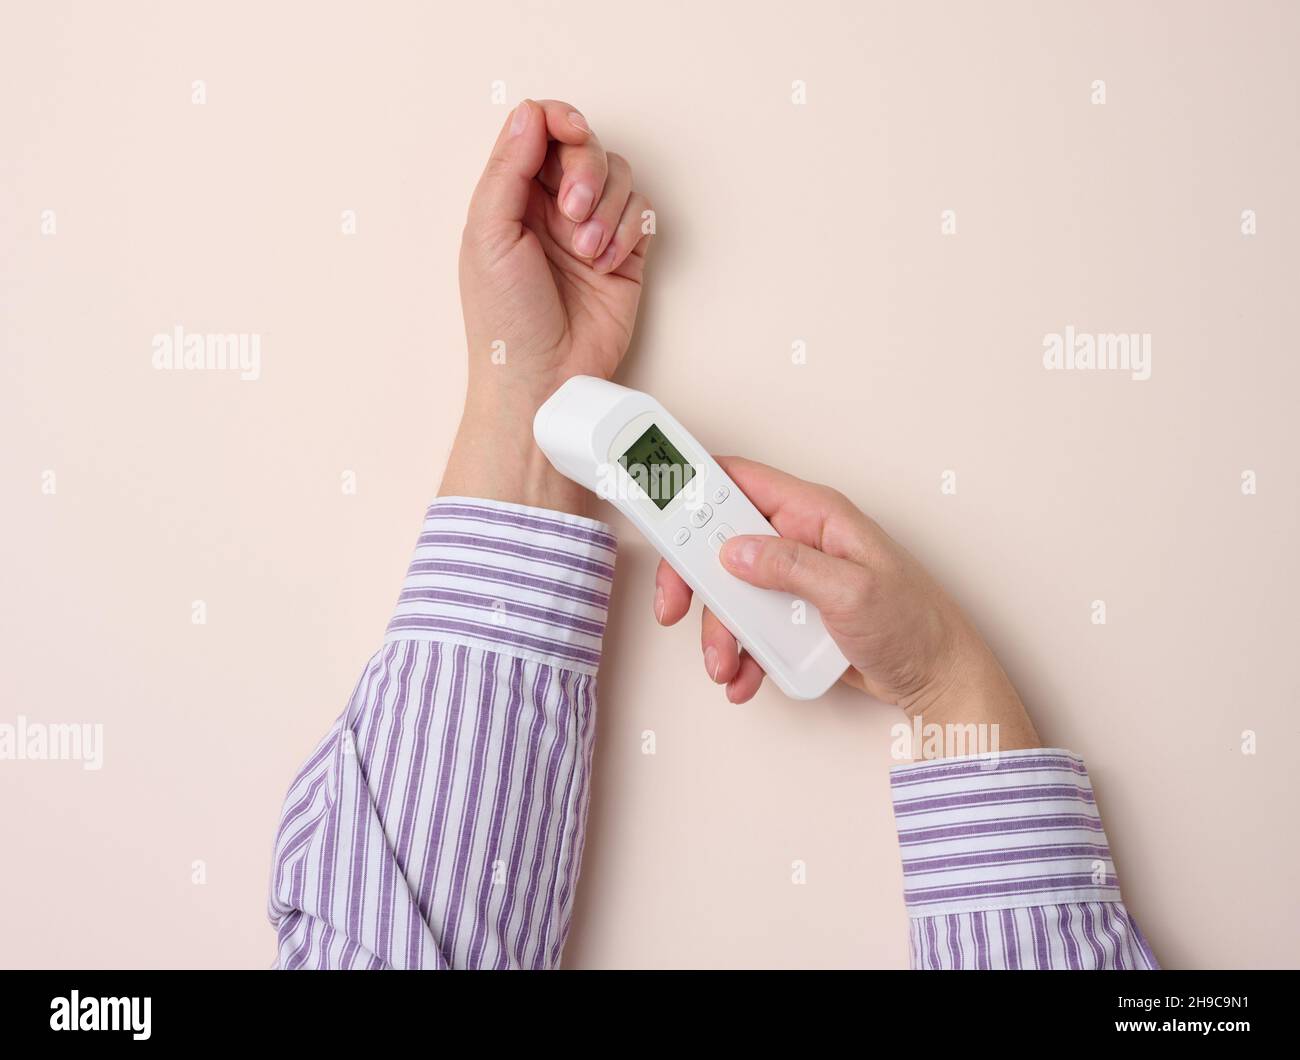 processus de mesure de la température corporelle au poignet avec un  thermomètre sans contact, fond beige Photo Stock - Alamy